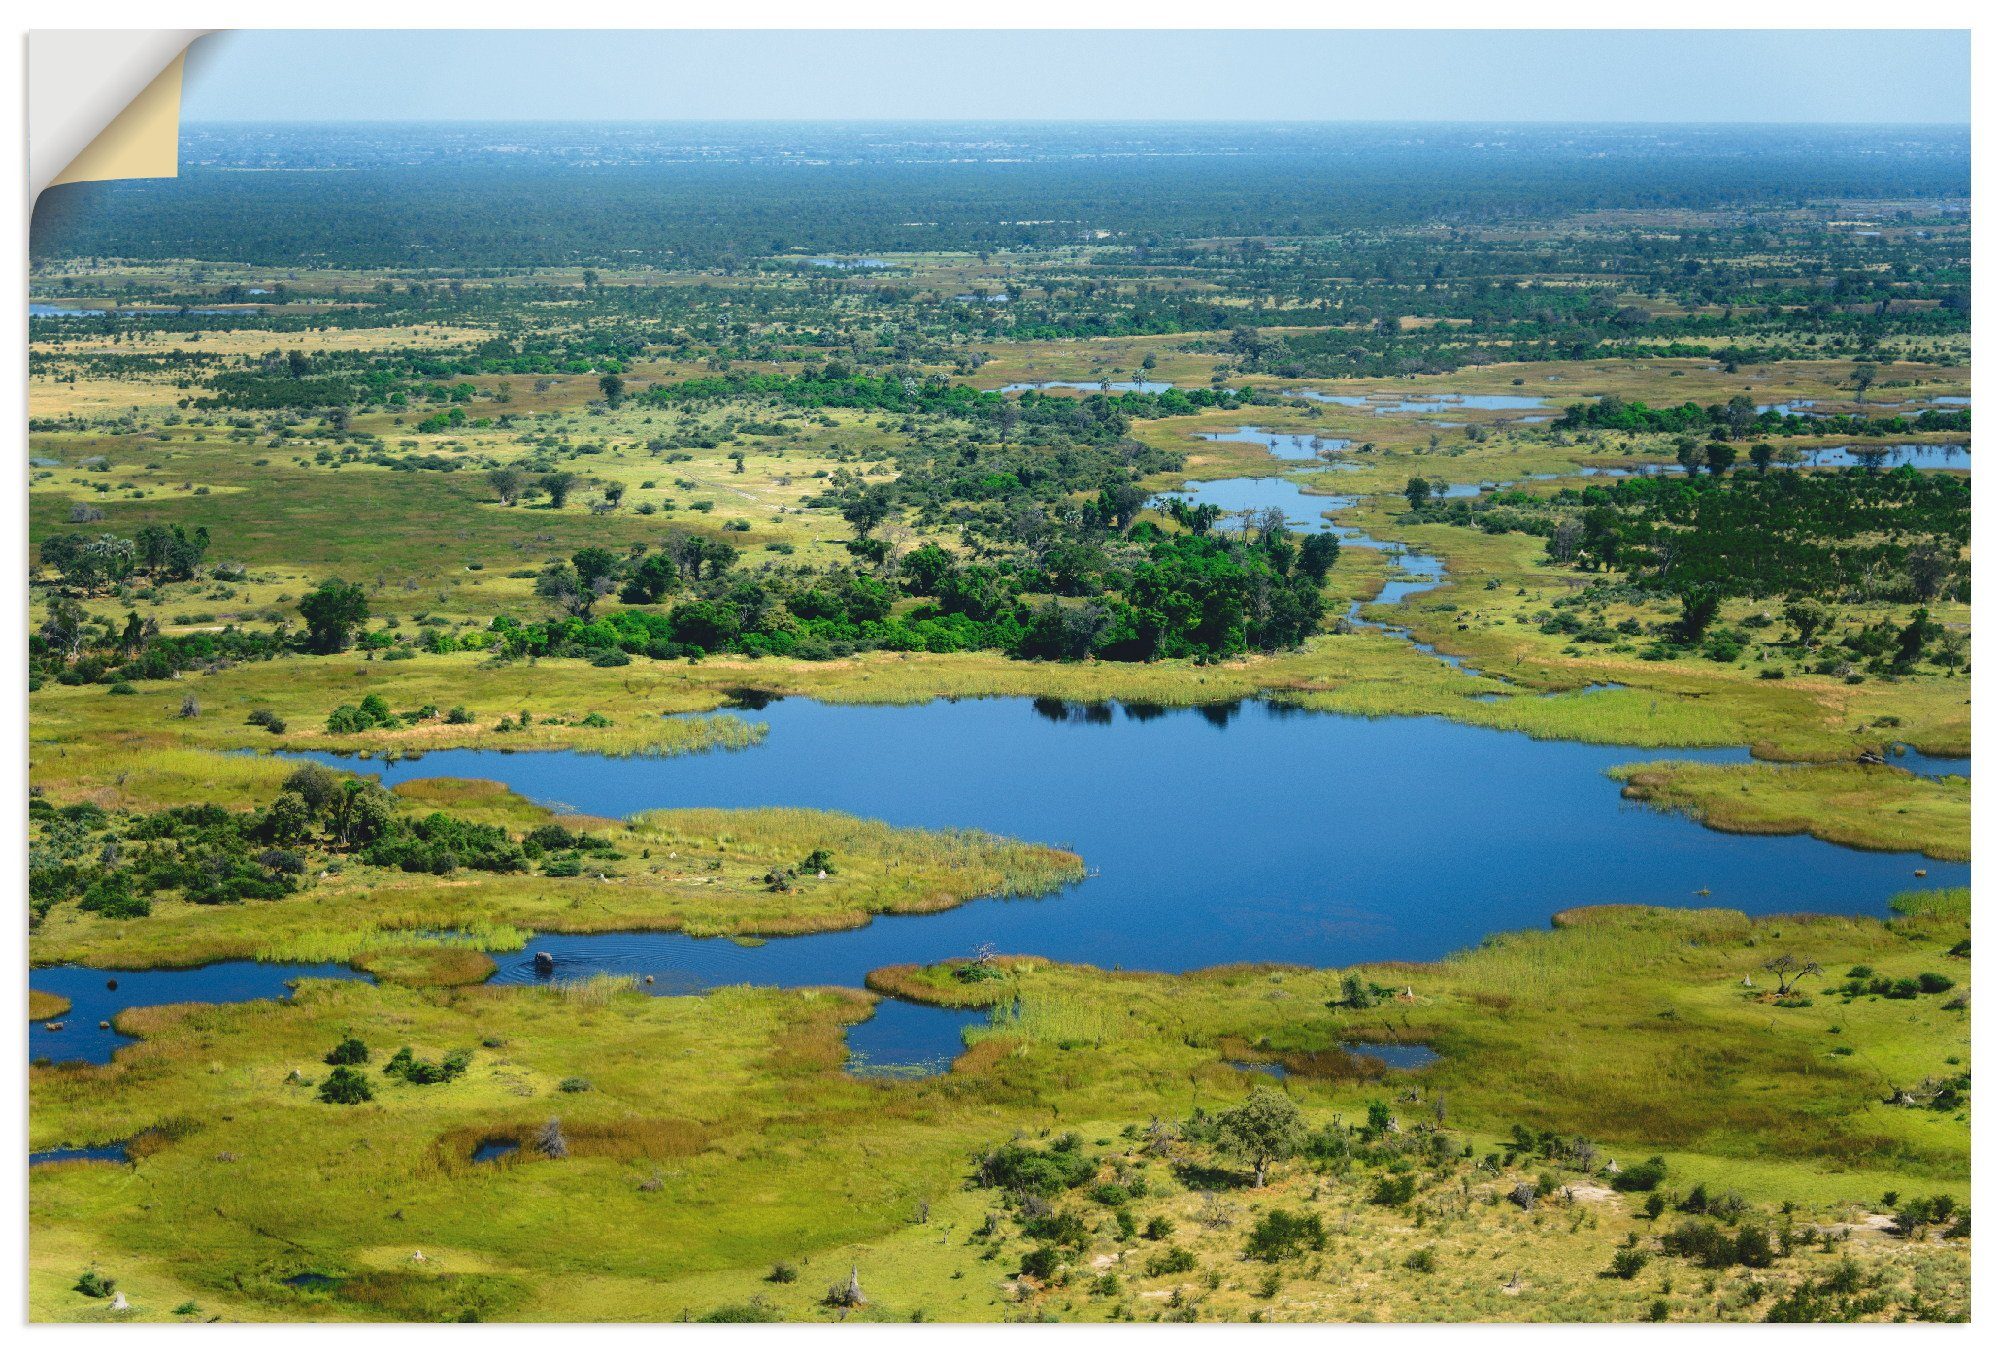 Artland Artprint Okavangodelta in vele afmetingen & productsoorten - artprint van aluminium / artprint voor buiten, artprint op linnen, poster, muursticker / wandfolie ook geschikt